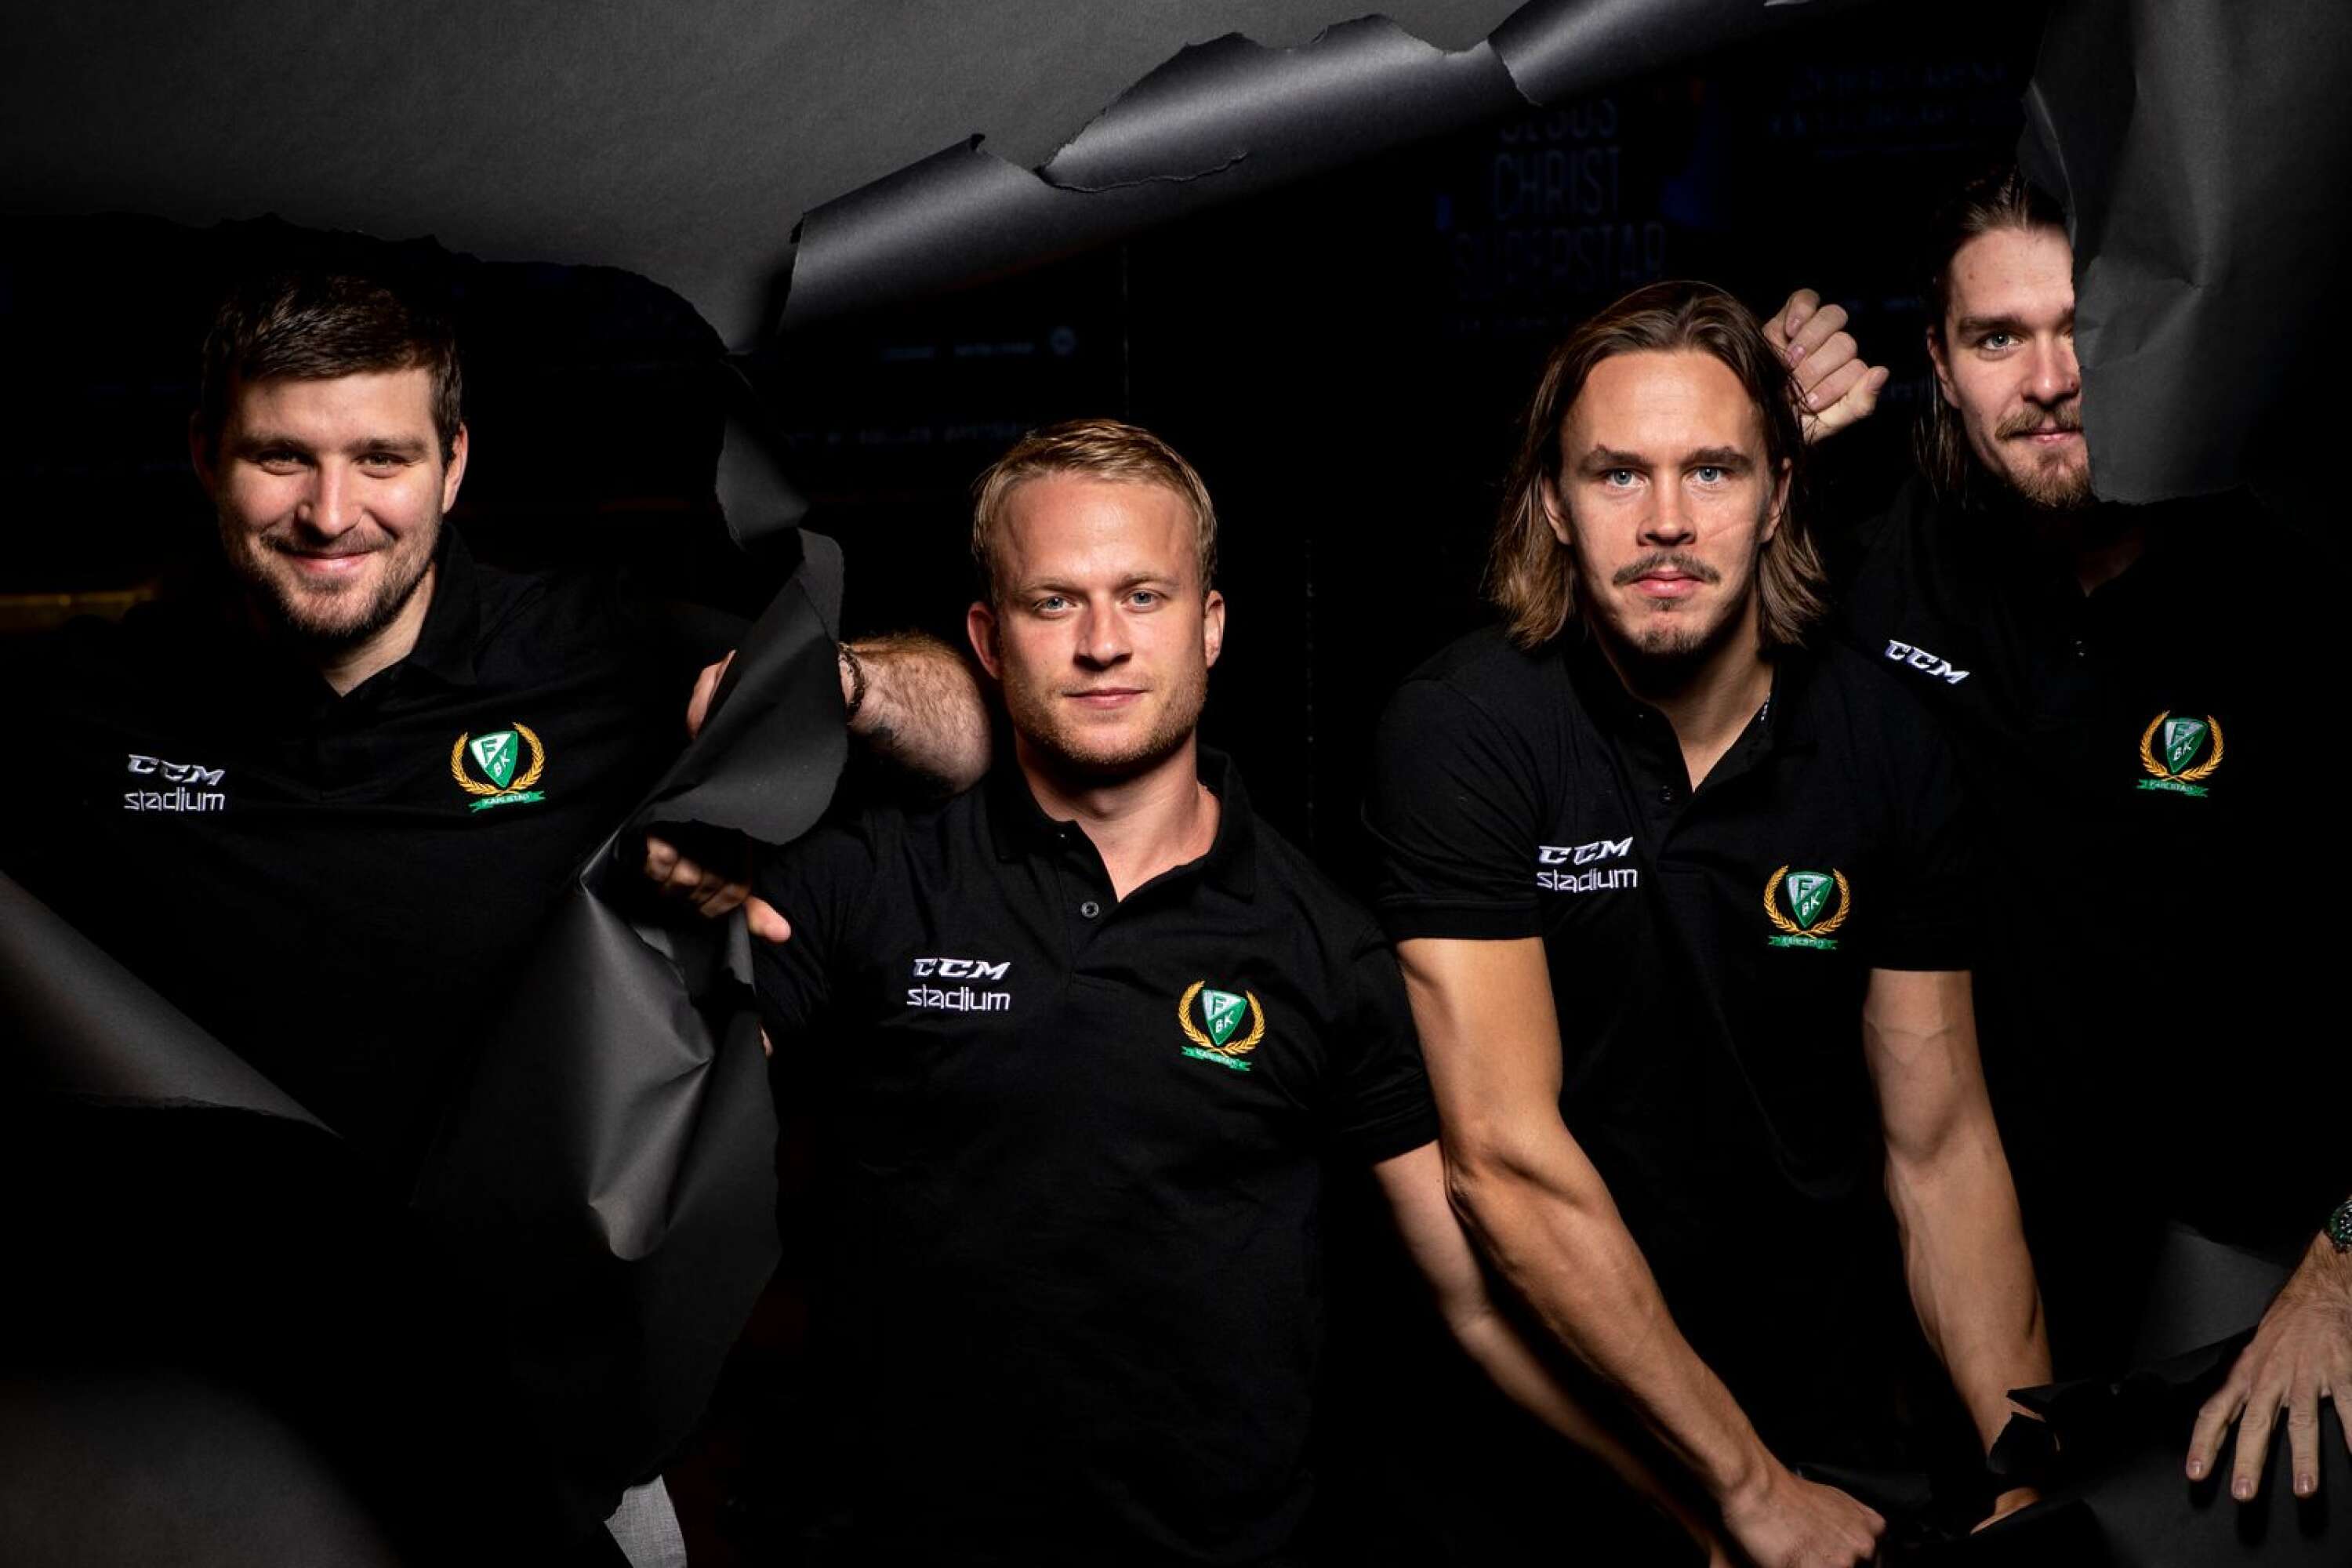 ”Jag vill vinna med mina kompisar”, säger Mikael Wikstrand (längst till vänster). Här med Marcus ”Lilliz” Nilsson, Joakim Nygård och Linus Johansson.